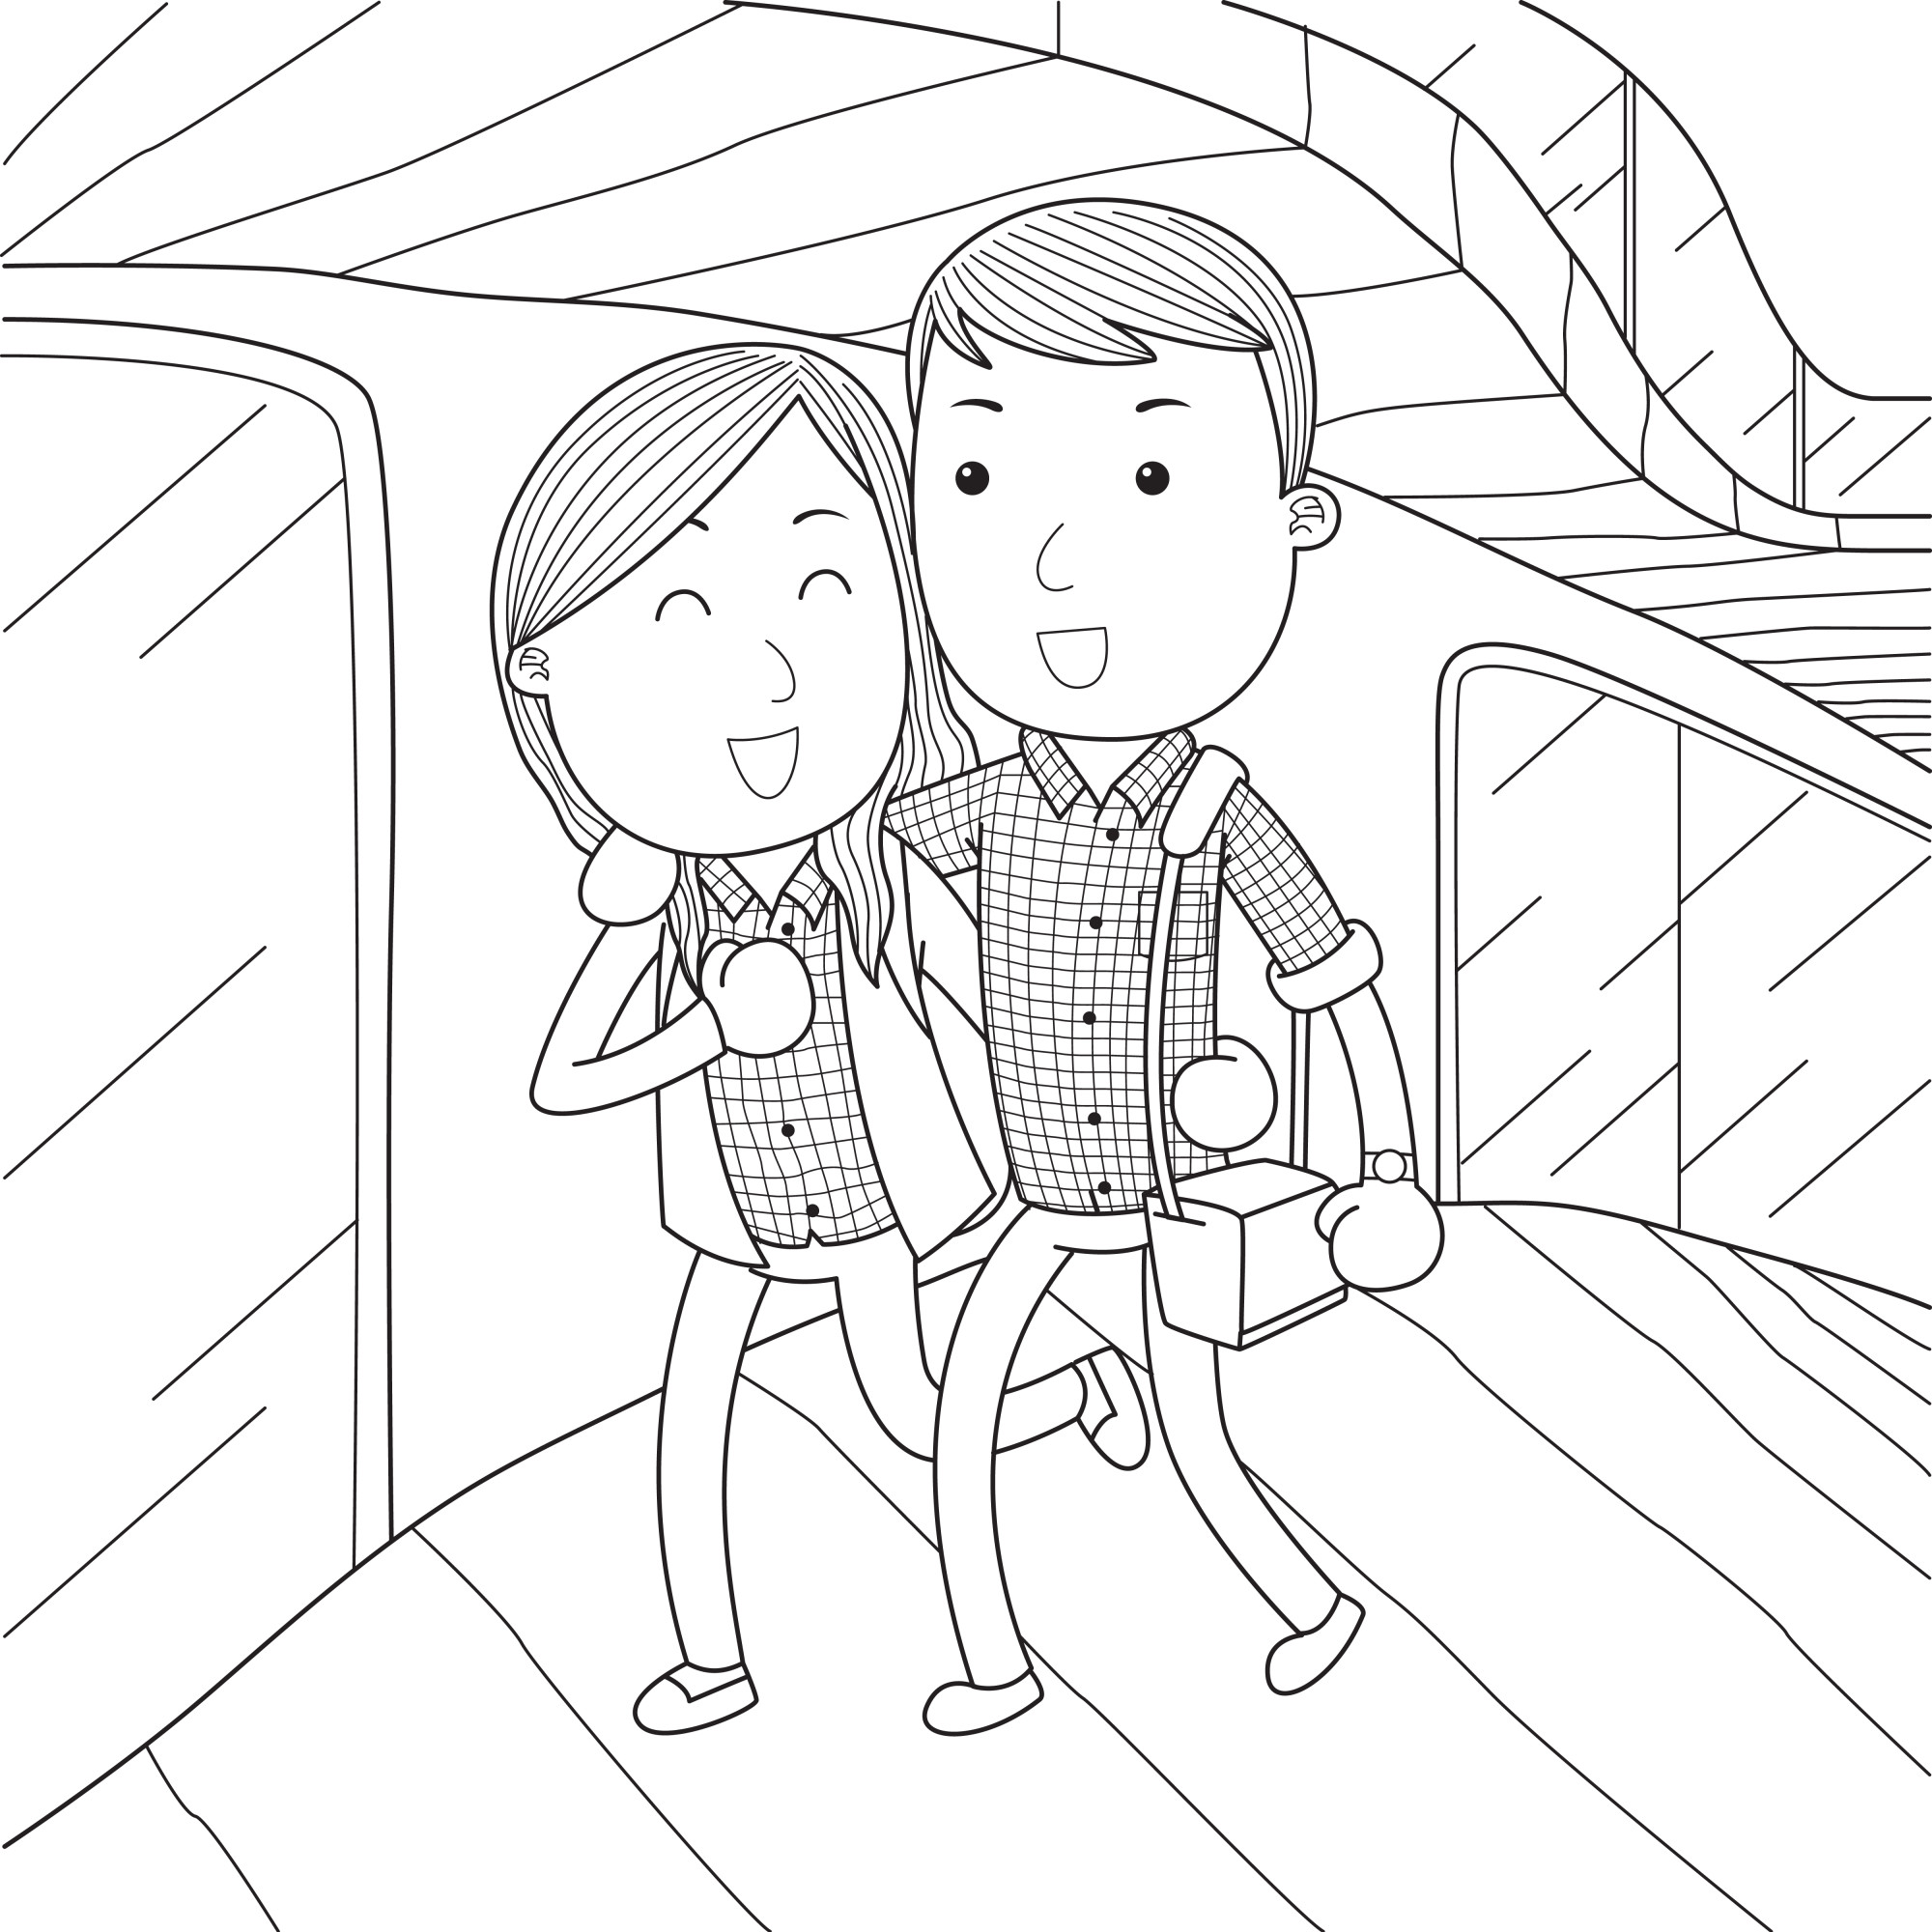 Раскраска для детей: девочка и мальчик идут в метро